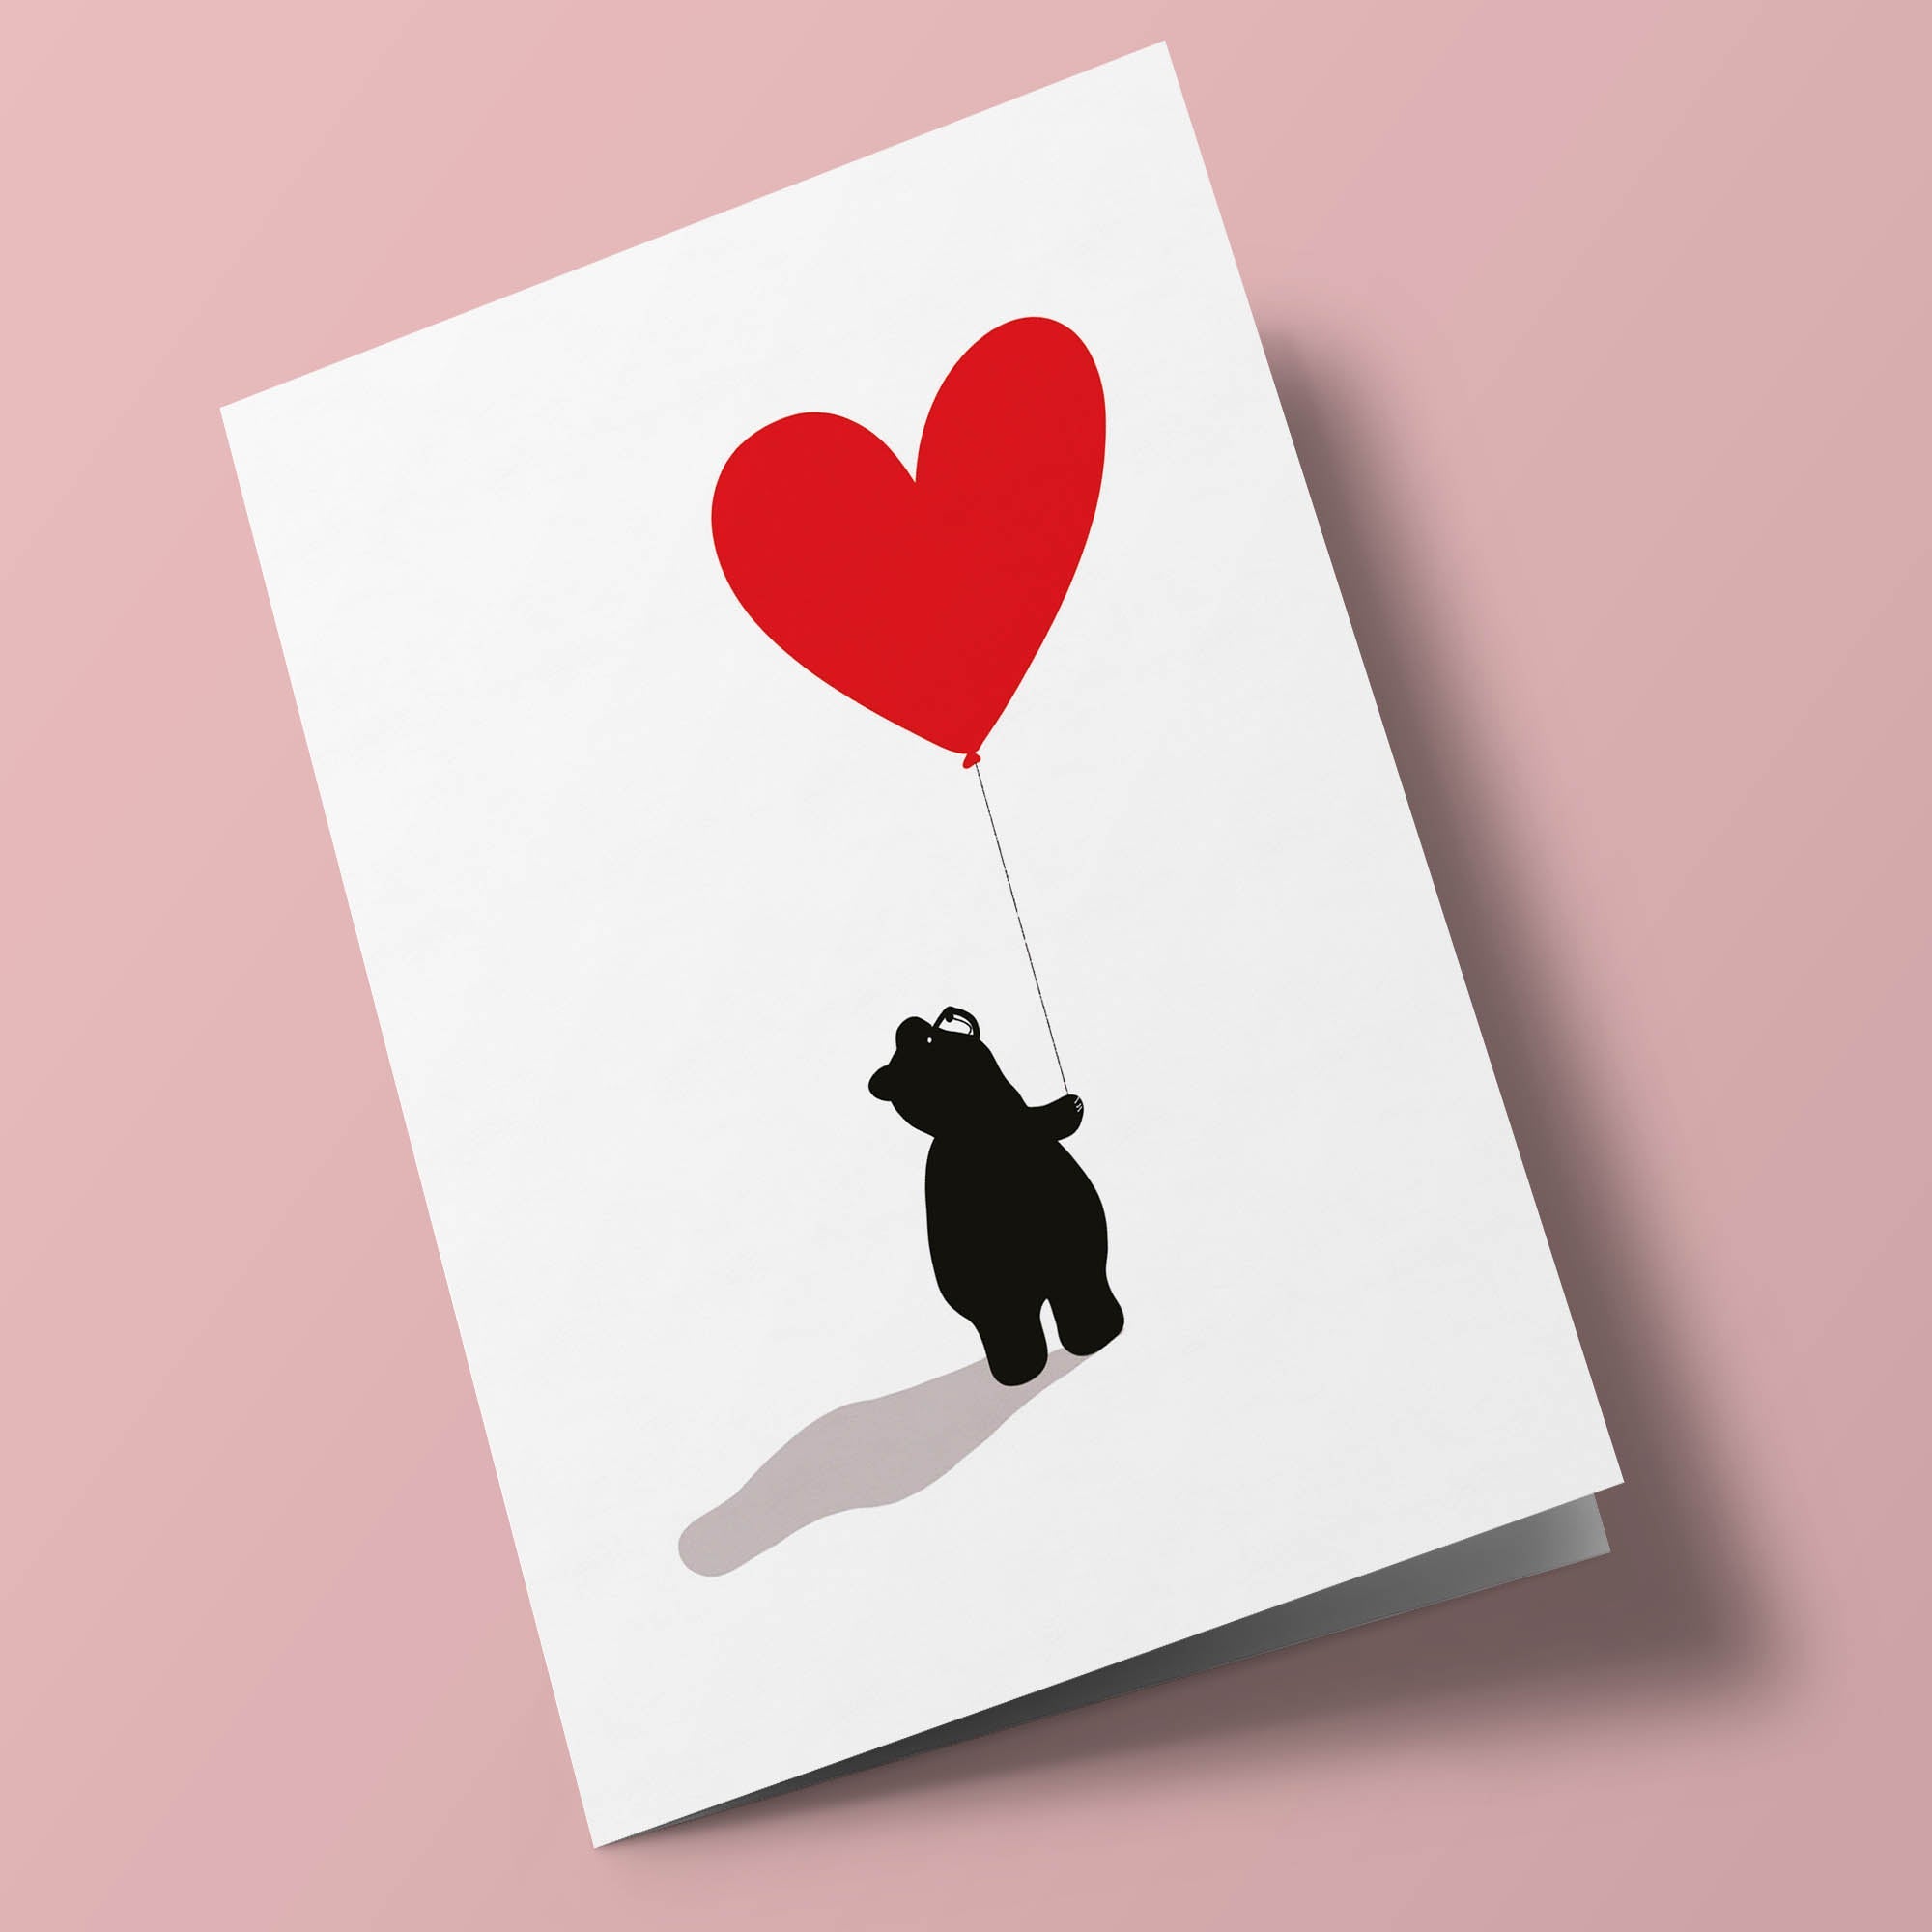 Bear - bear with heart-shaped balloon